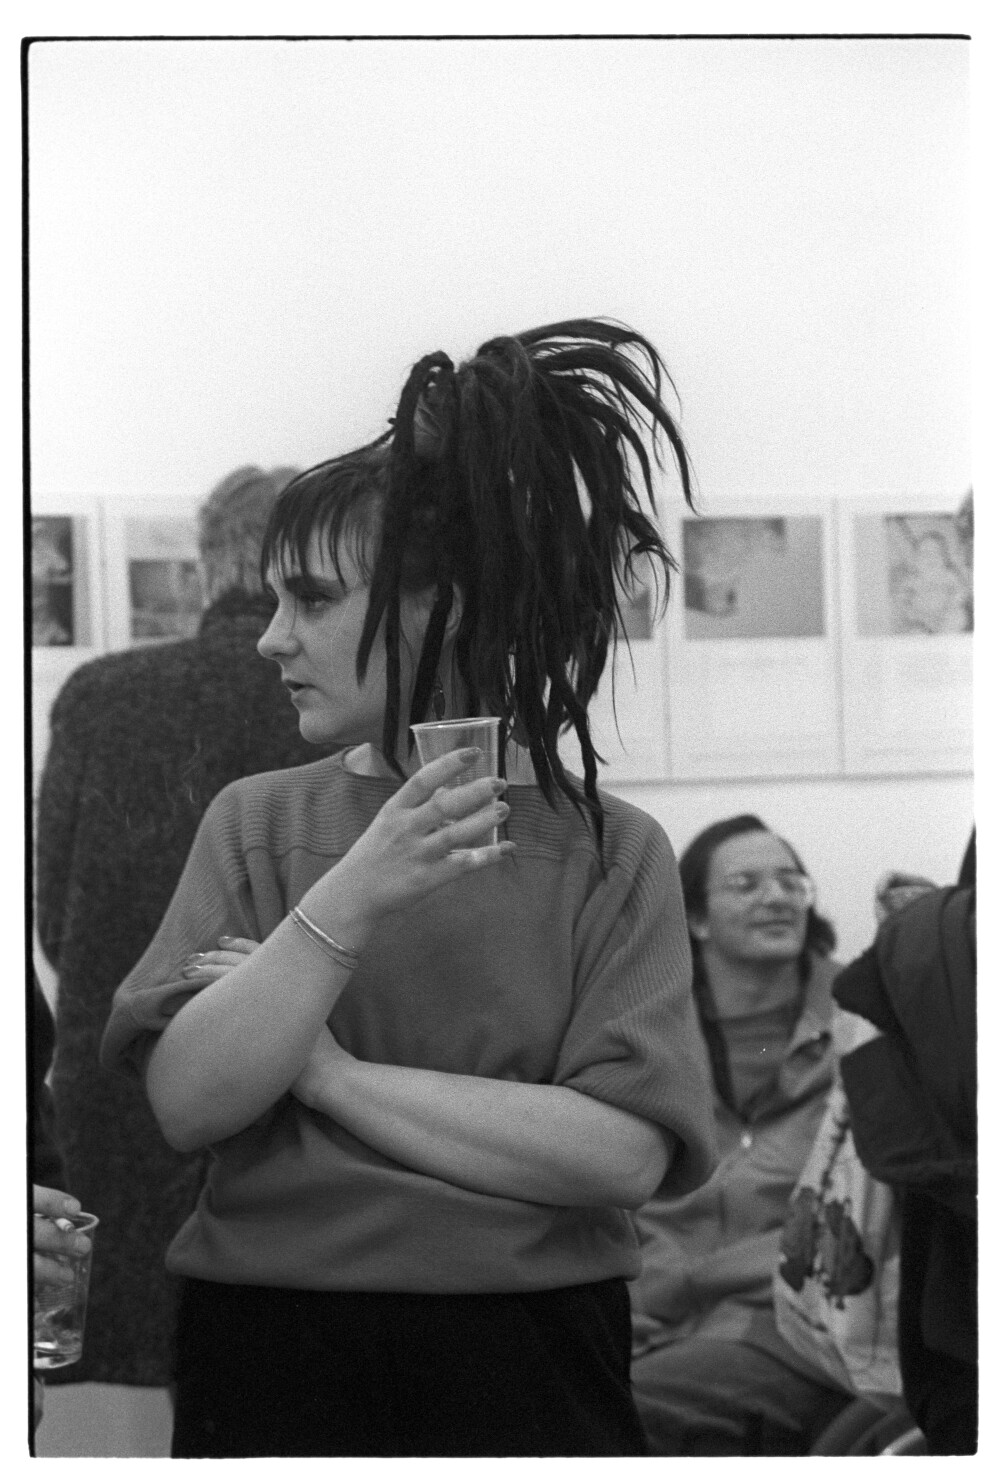 Die Tödliche Doris 06.03.1986 I N 1 (Rita Maier / Schwules Museum Berlin RR-P)